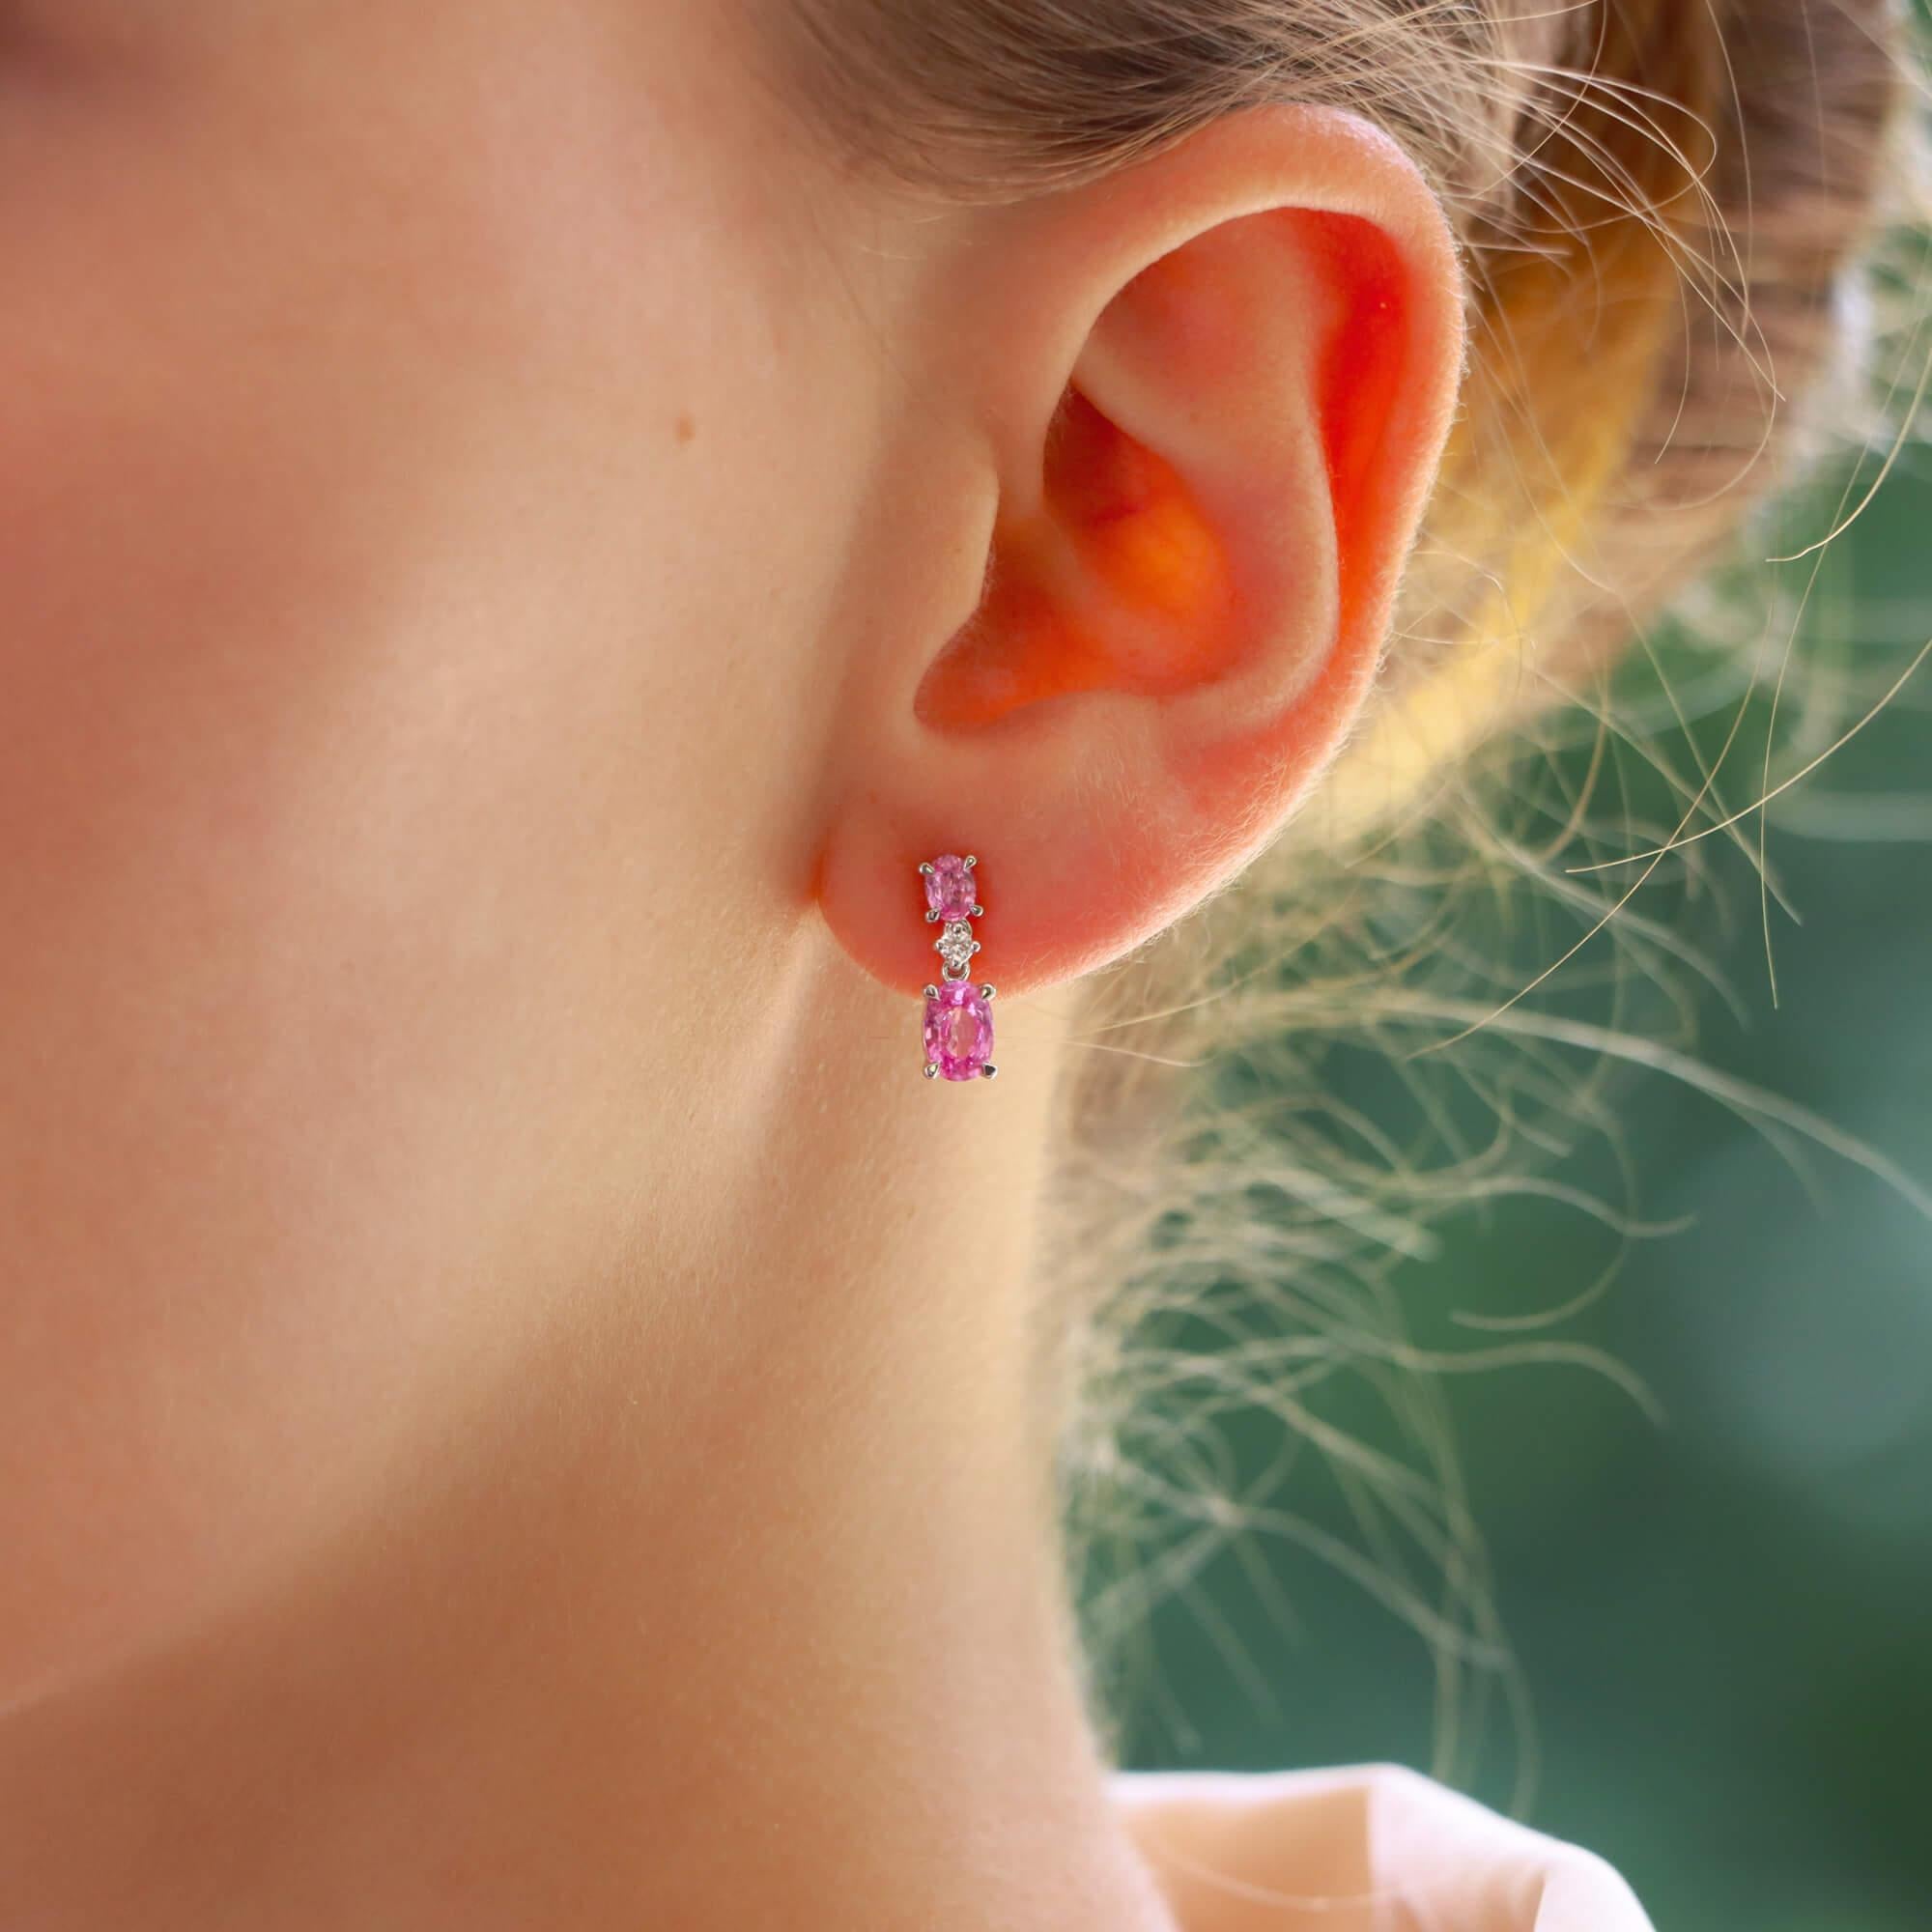 Ein wunderschönes Paar rosafarbene Saphir- und Diamant-Ohrringe aus 18 Karat Weißgold.

Jeder Ohrring besteht zunächst aus einem kleinen oval geschliffenen rosa Saphir, der in vier Krallen gefasst und auf der Rückseite mit einem Stift und einem